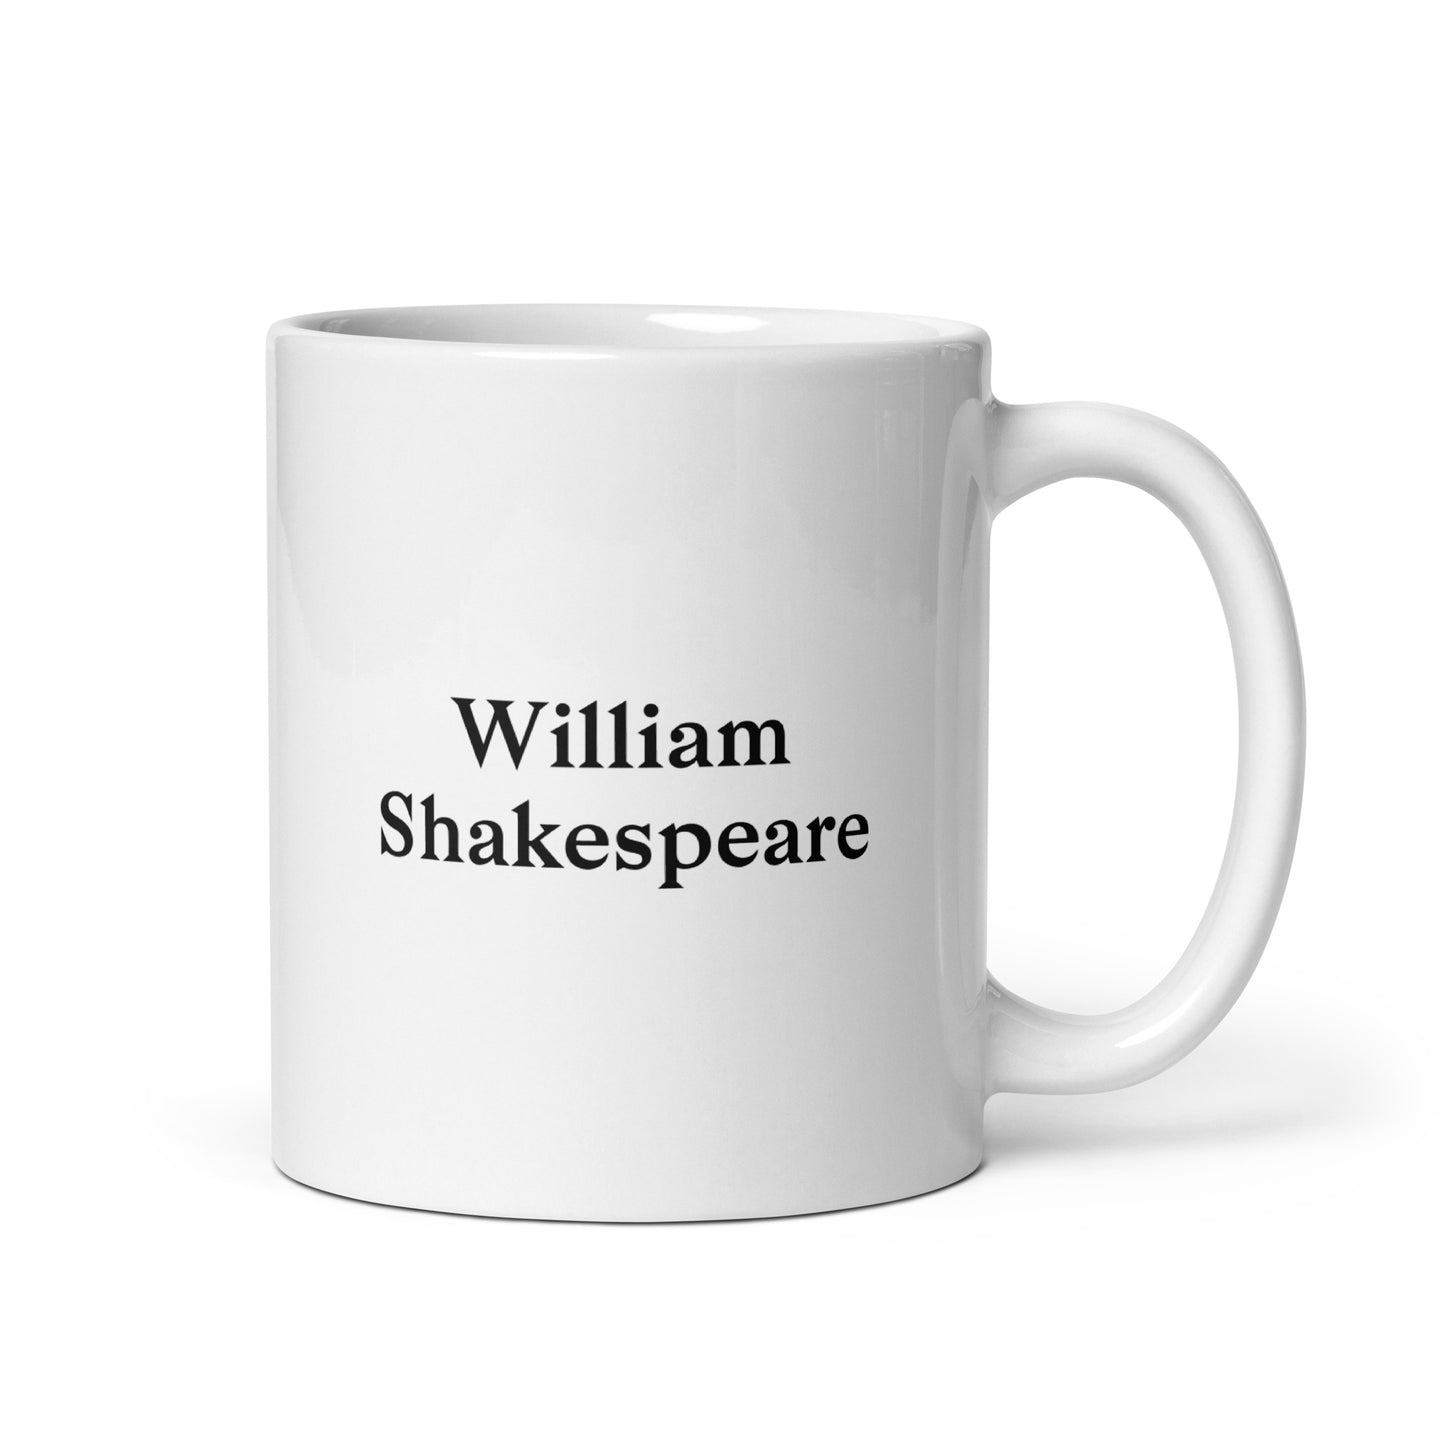 William Shakespeare white glossy mug